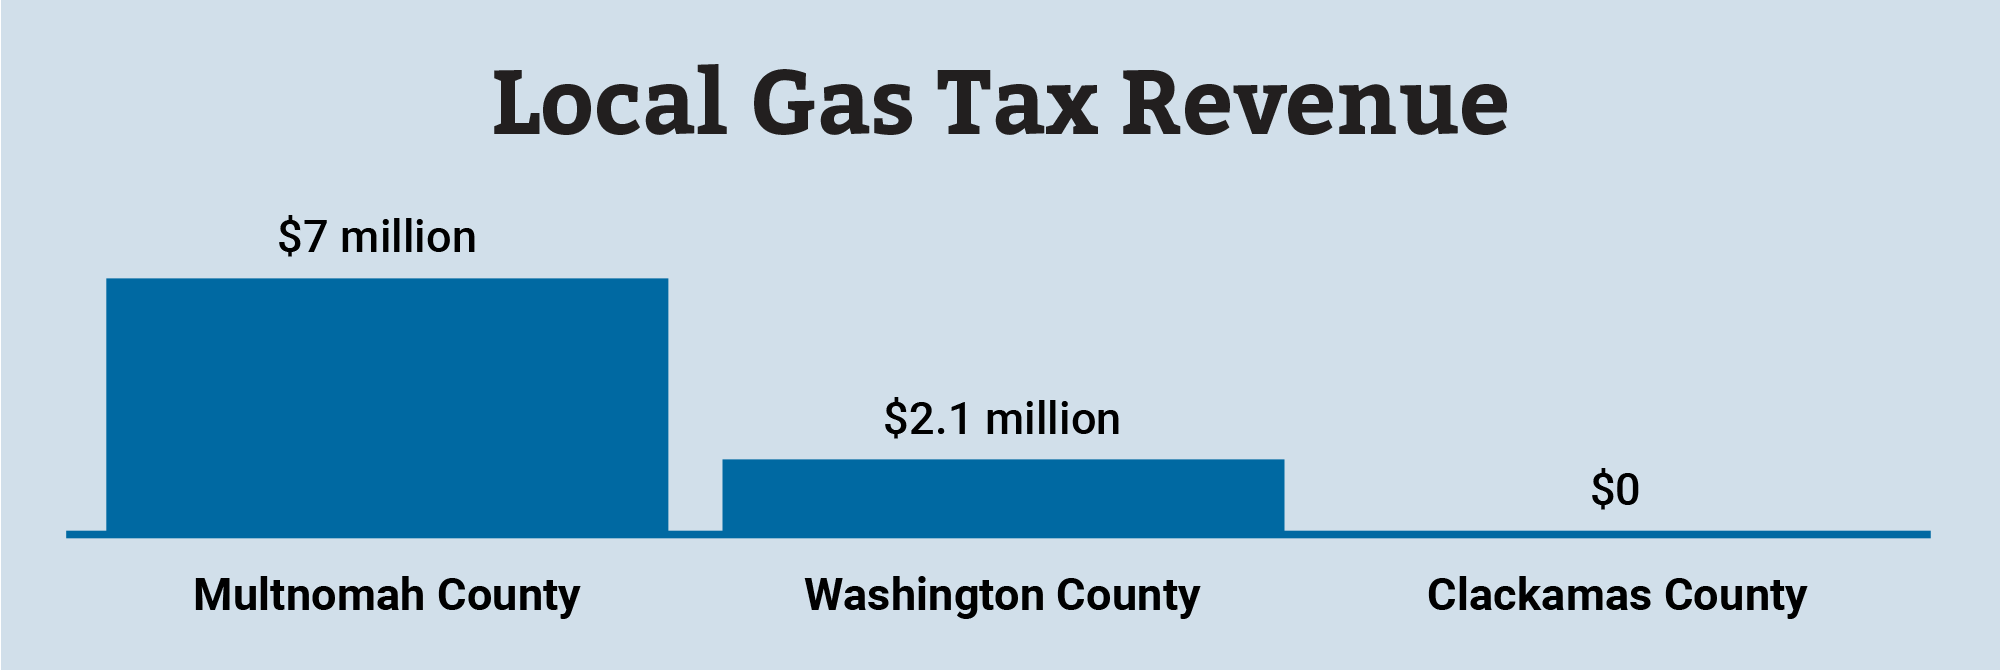 Local Gas Tax Revenue